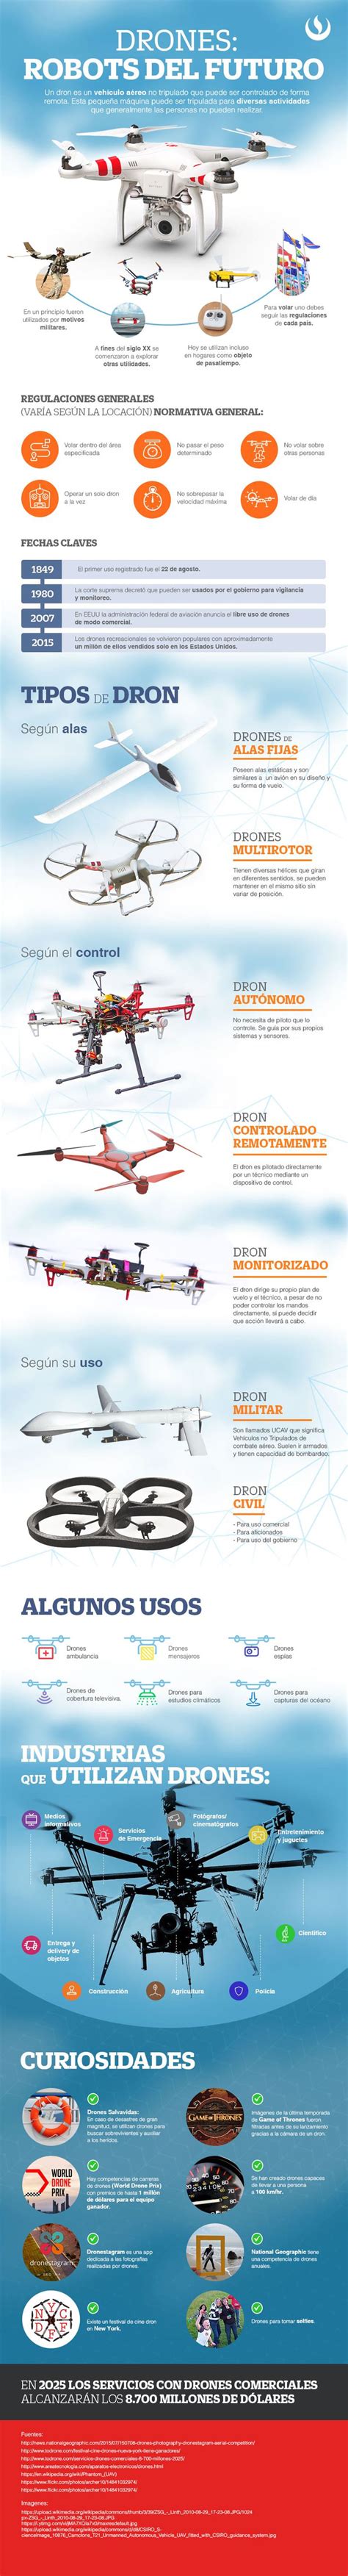 drones todo lo  necesitas saber sobre ellos drones dron computacion